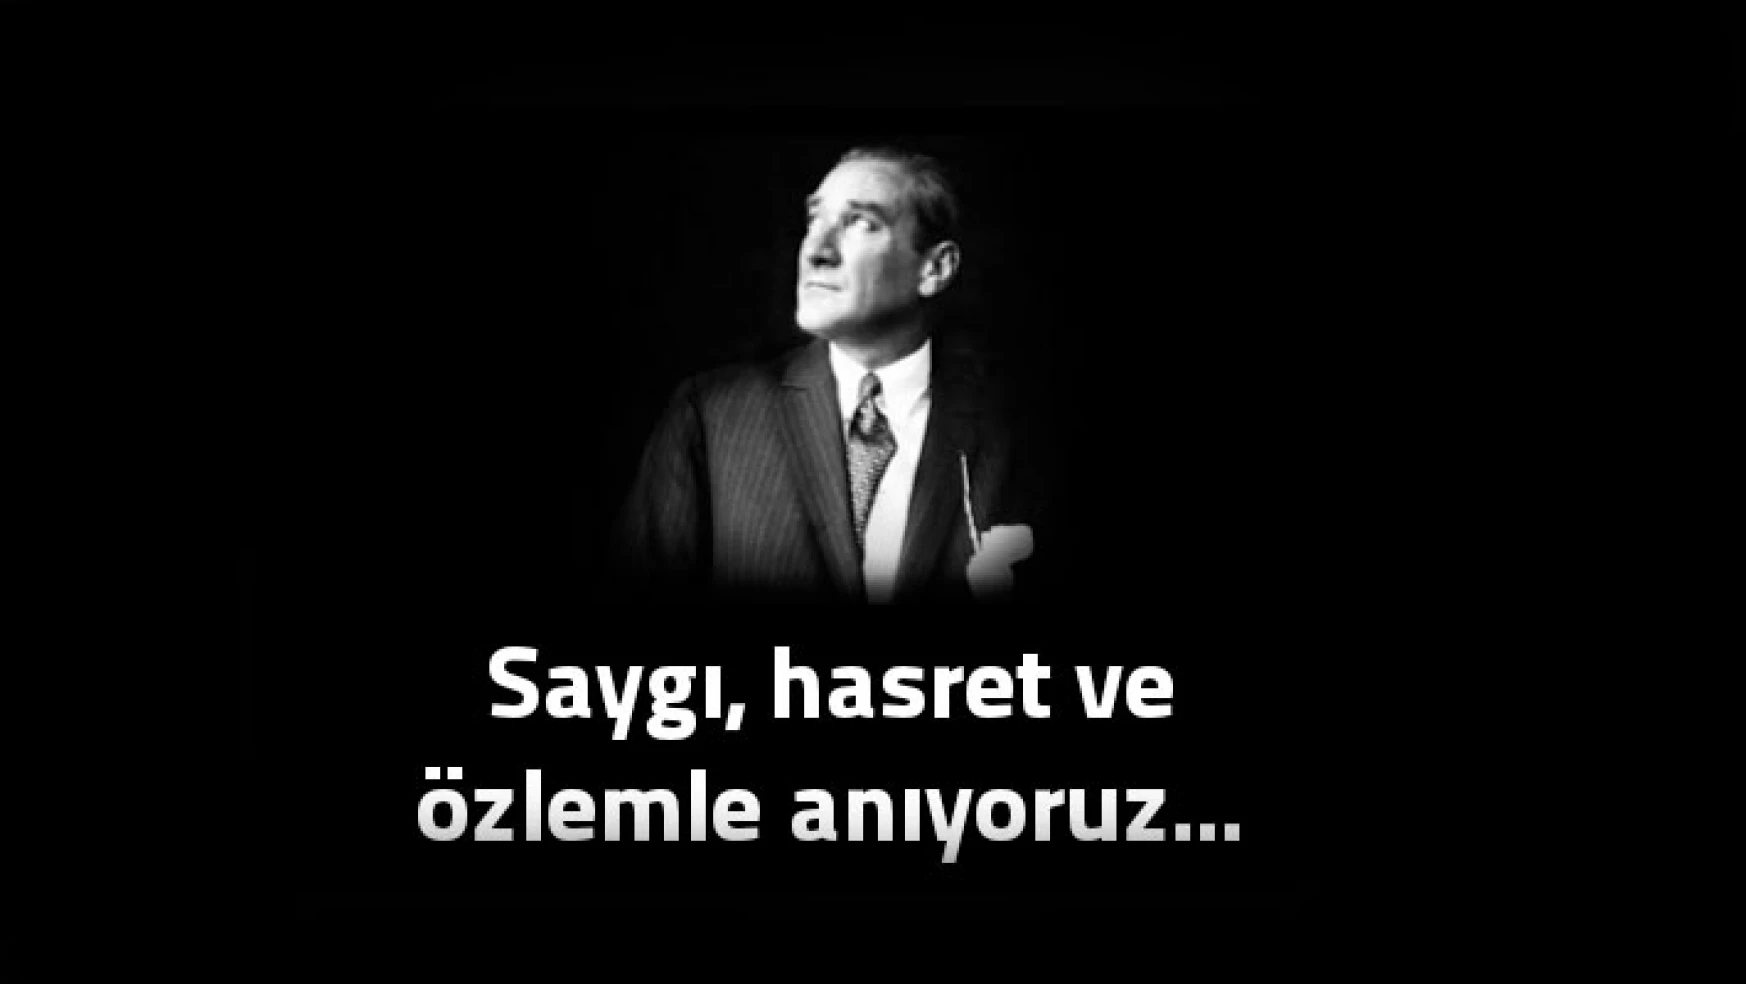 Ulu Önder Mustafa Kemal Atatürk'ü saygıyla anıyoruz